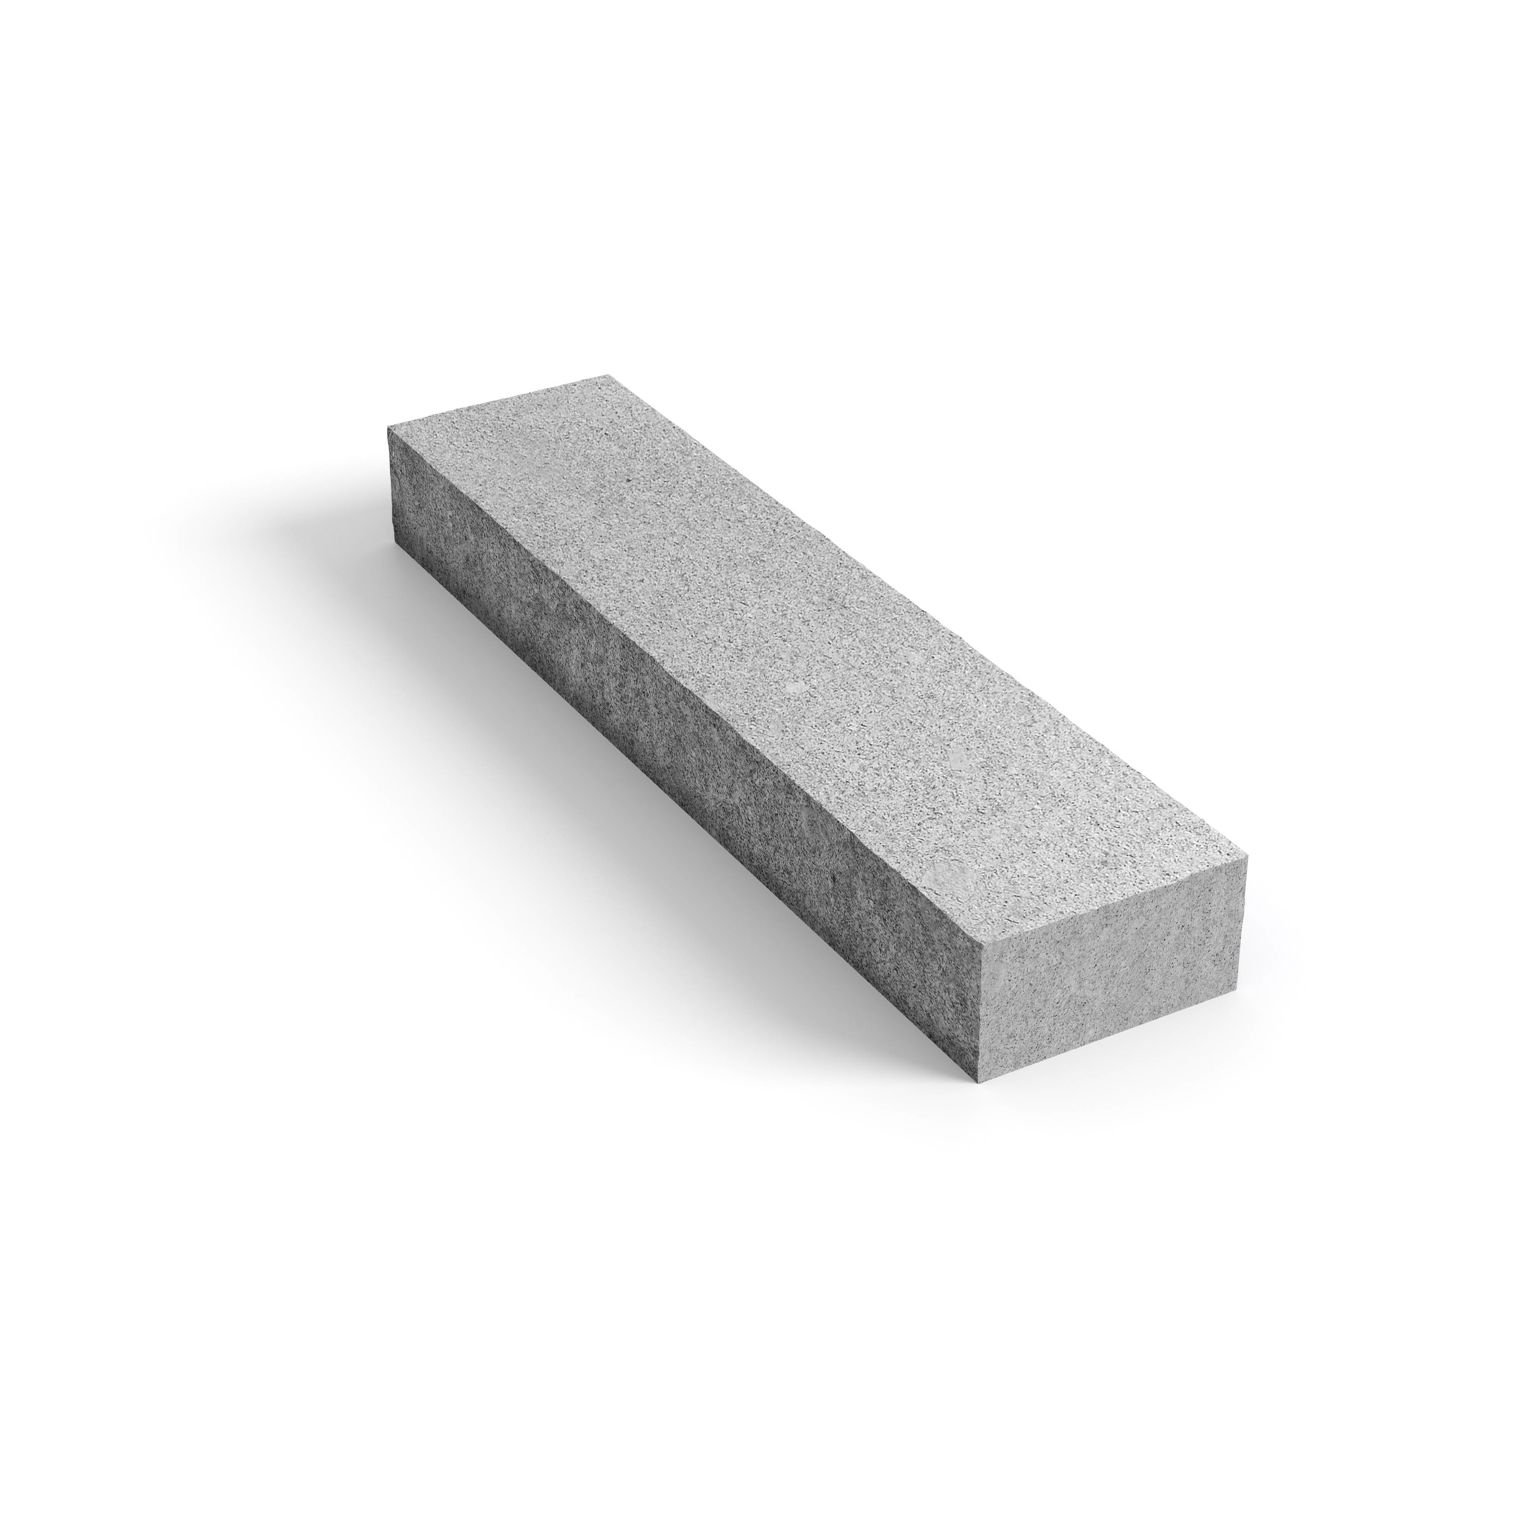 Produktbild på blocksteg i granit med måtten 400x400x40 mm i färgen Porto grå.